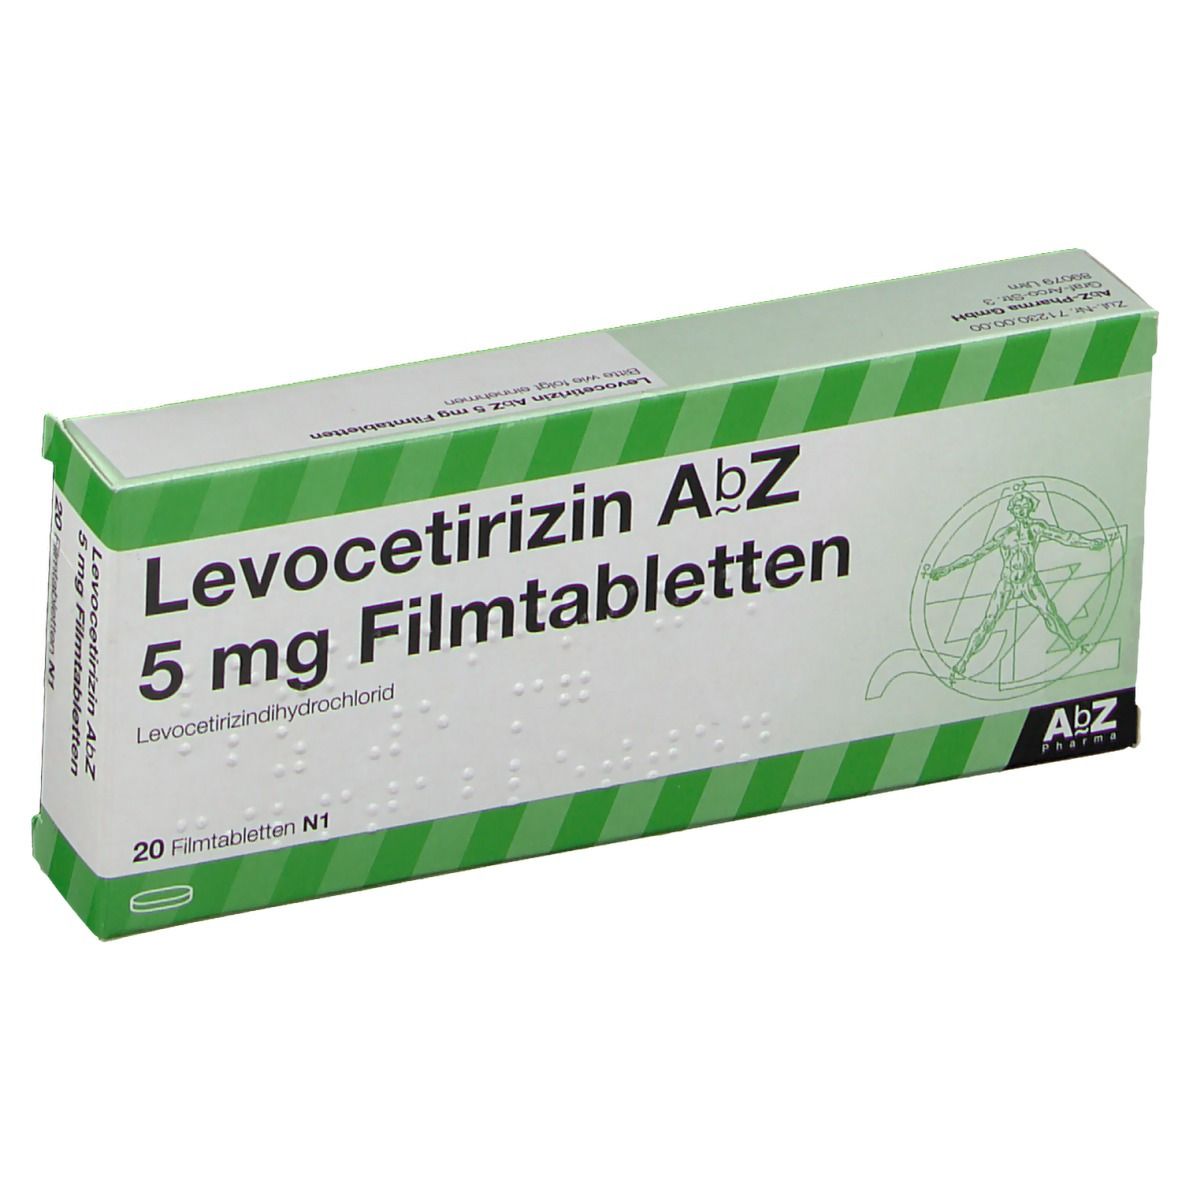 LEVOCETIRIZIN AbZ 5 mg Filmtabletten